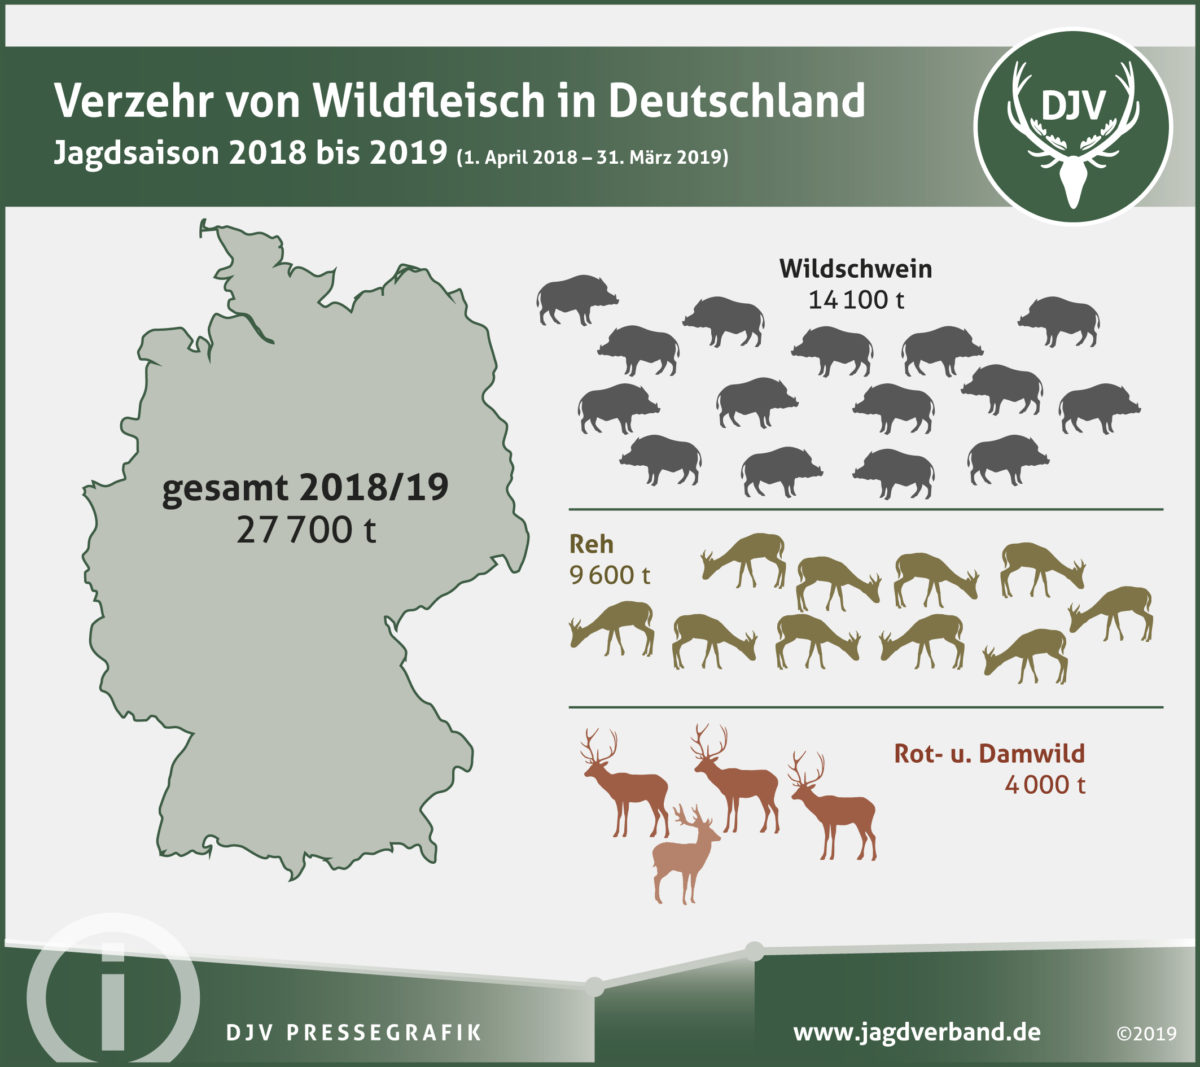 Deutschland liebt Wildbret vom Wildschwein